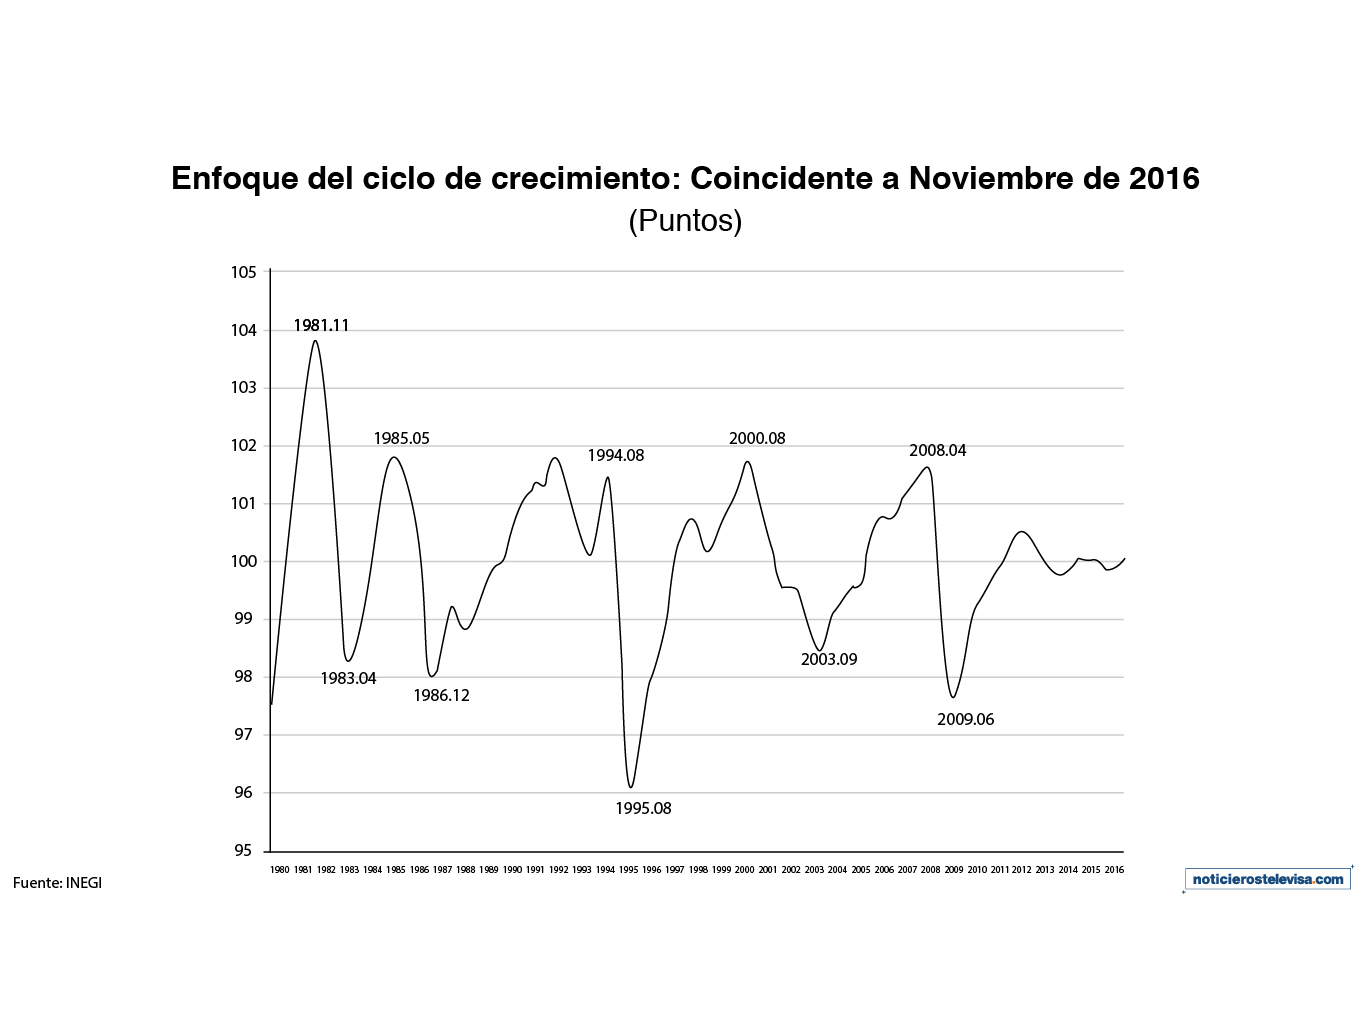 El indicador coincidente mostró una mejoría mensual al ubicarse en 100.1 puntos, según datos del INEGI